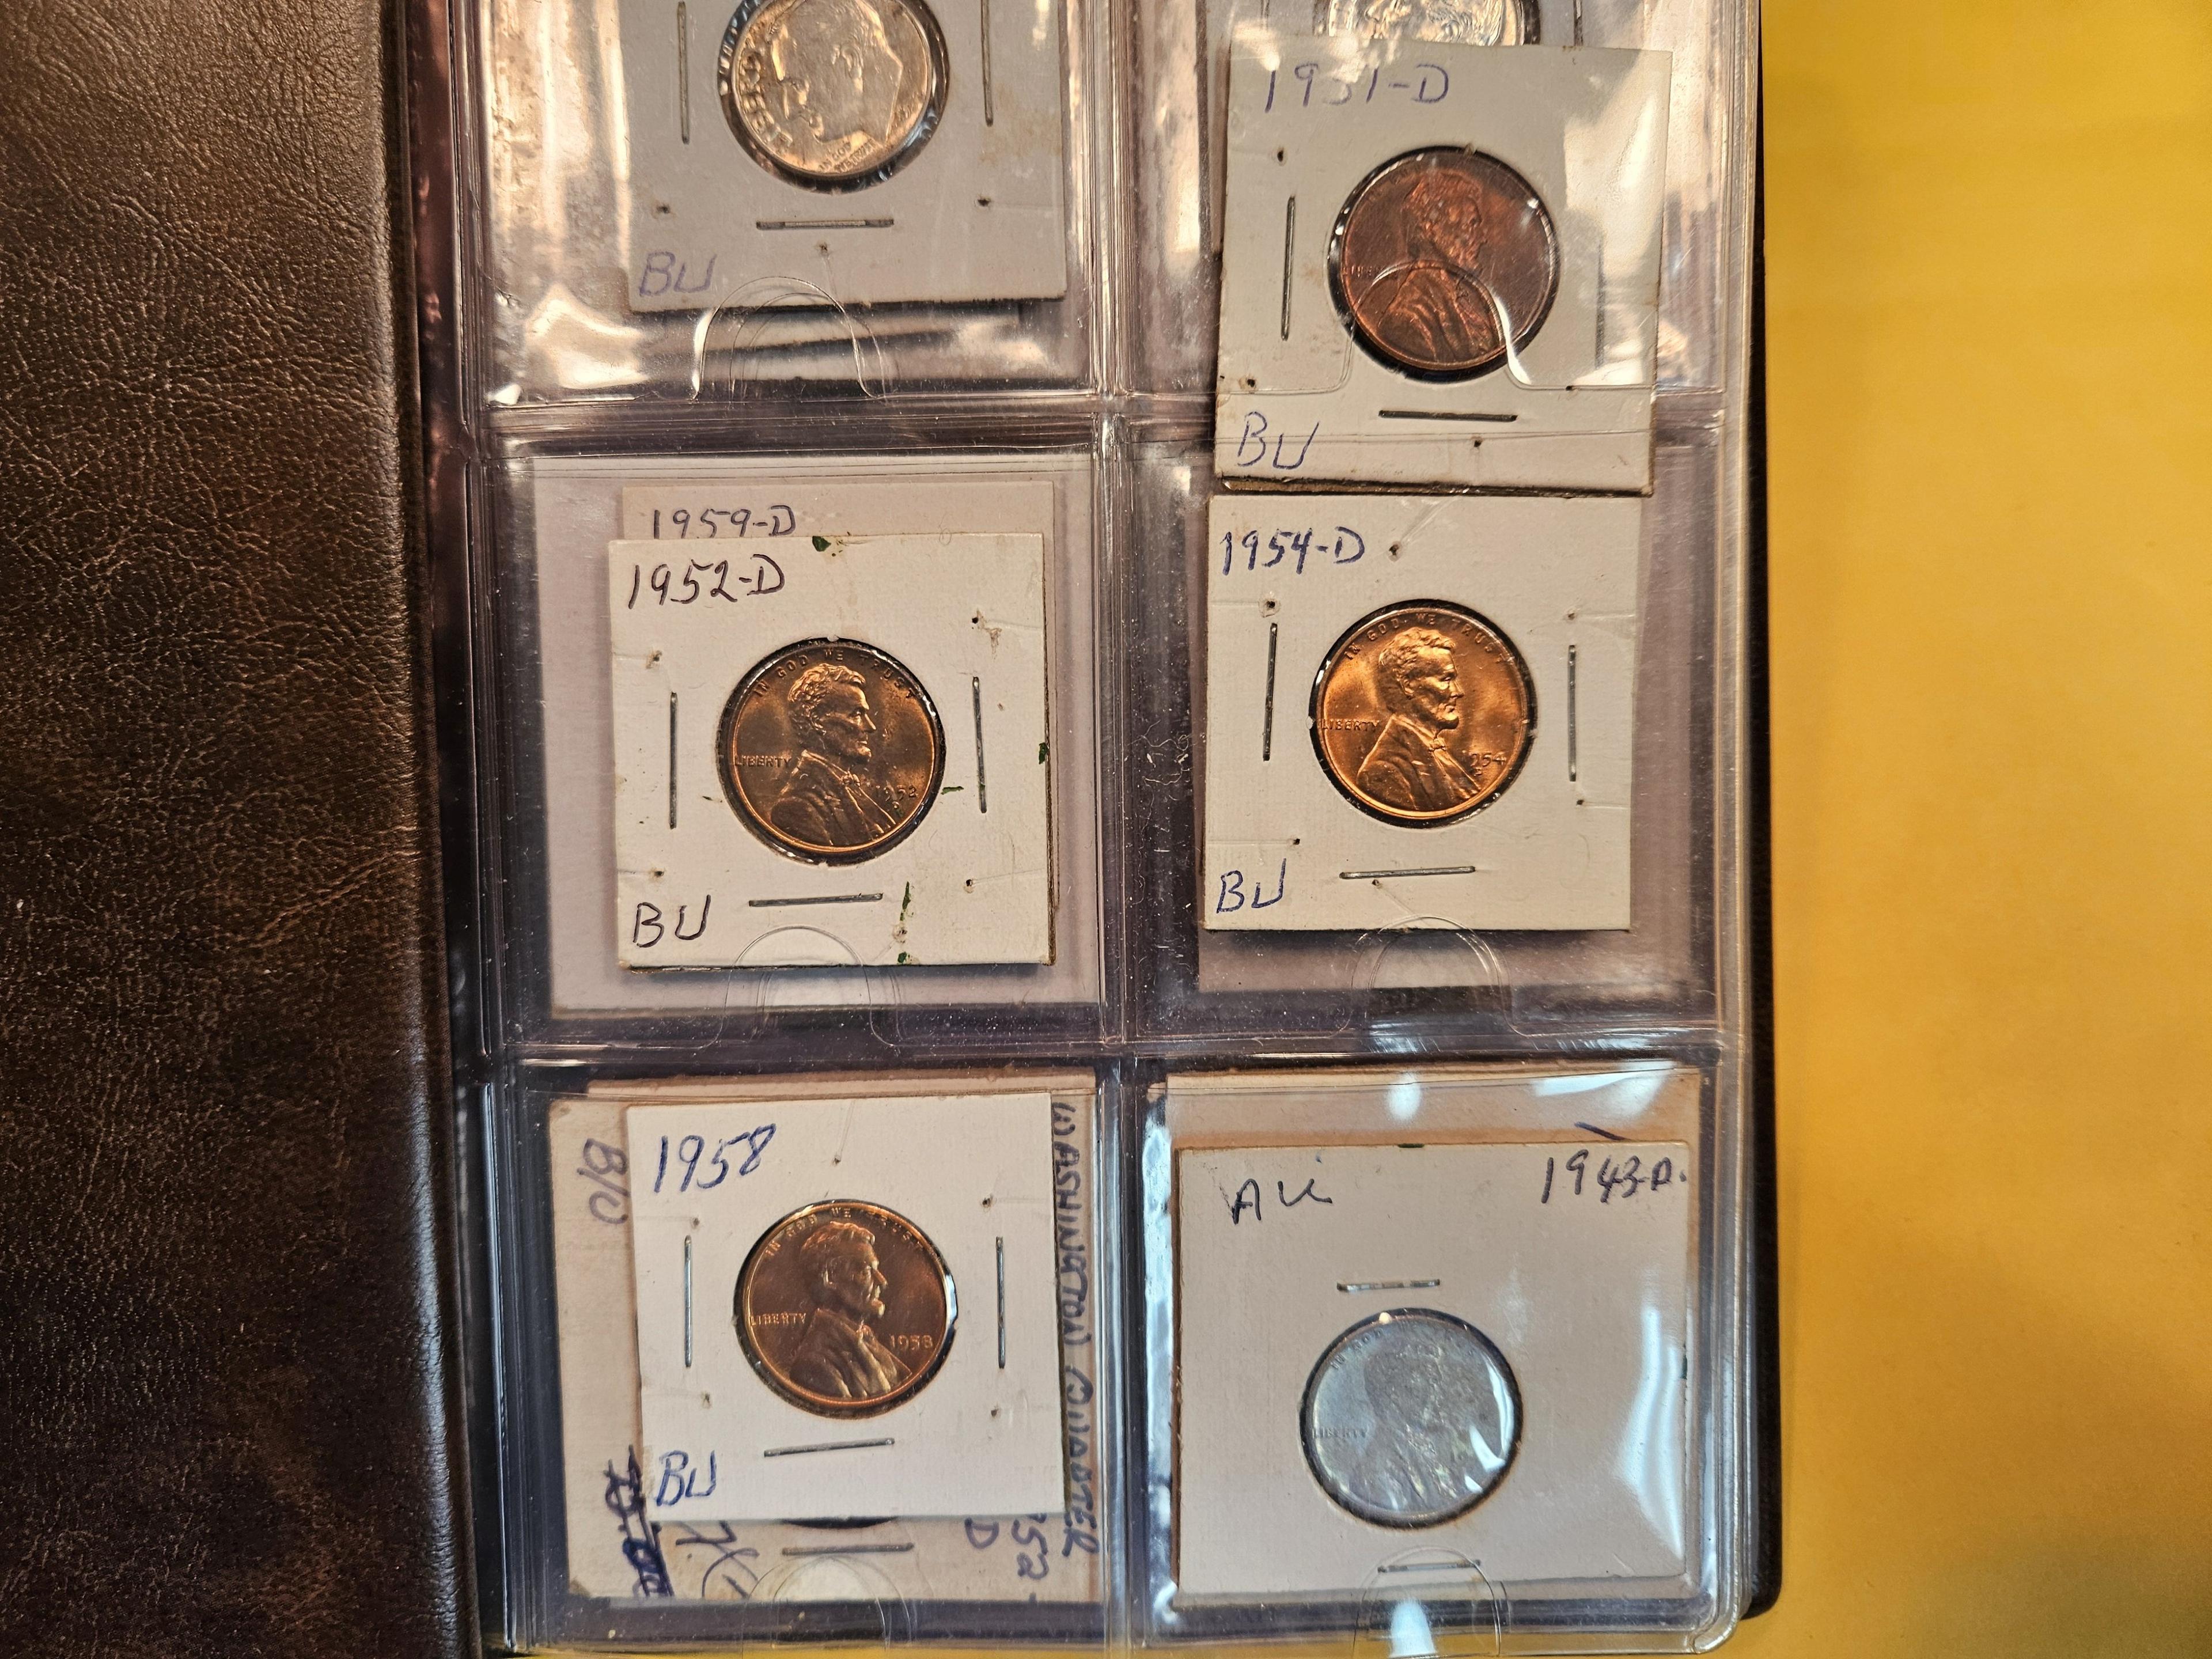 Smaller coin album with coins